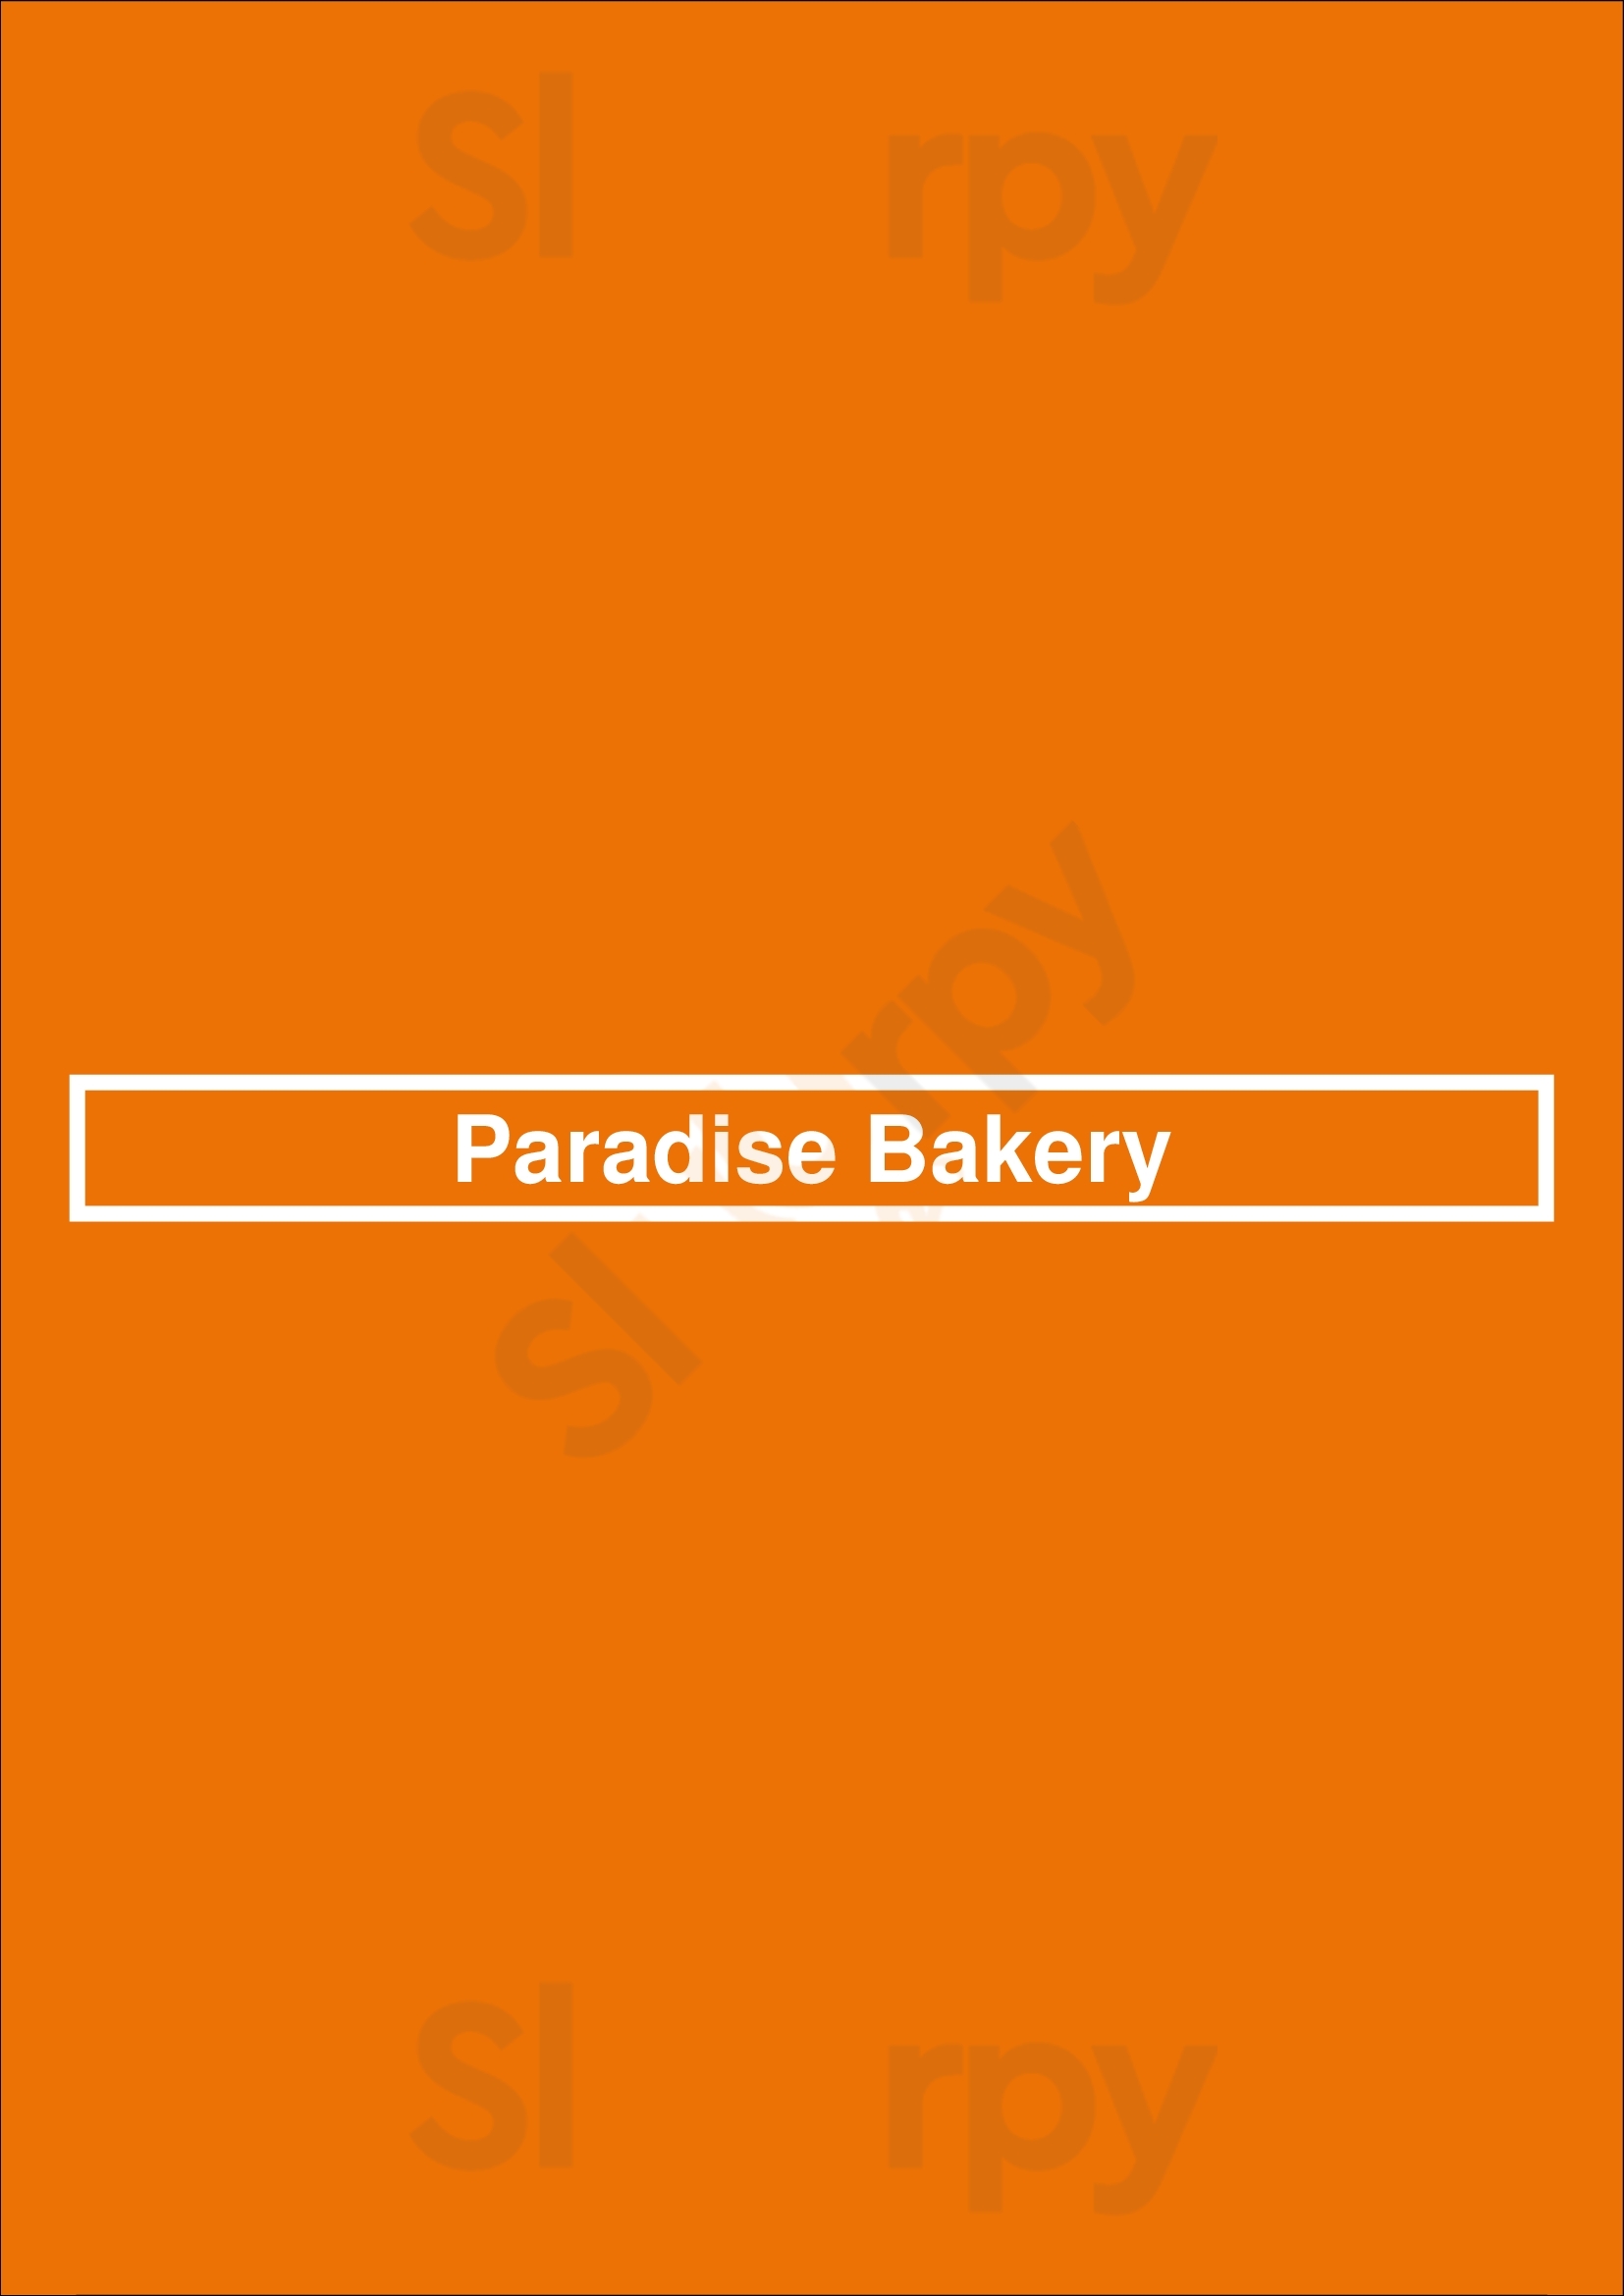 Paradise Bakery Dallas Menu - 1